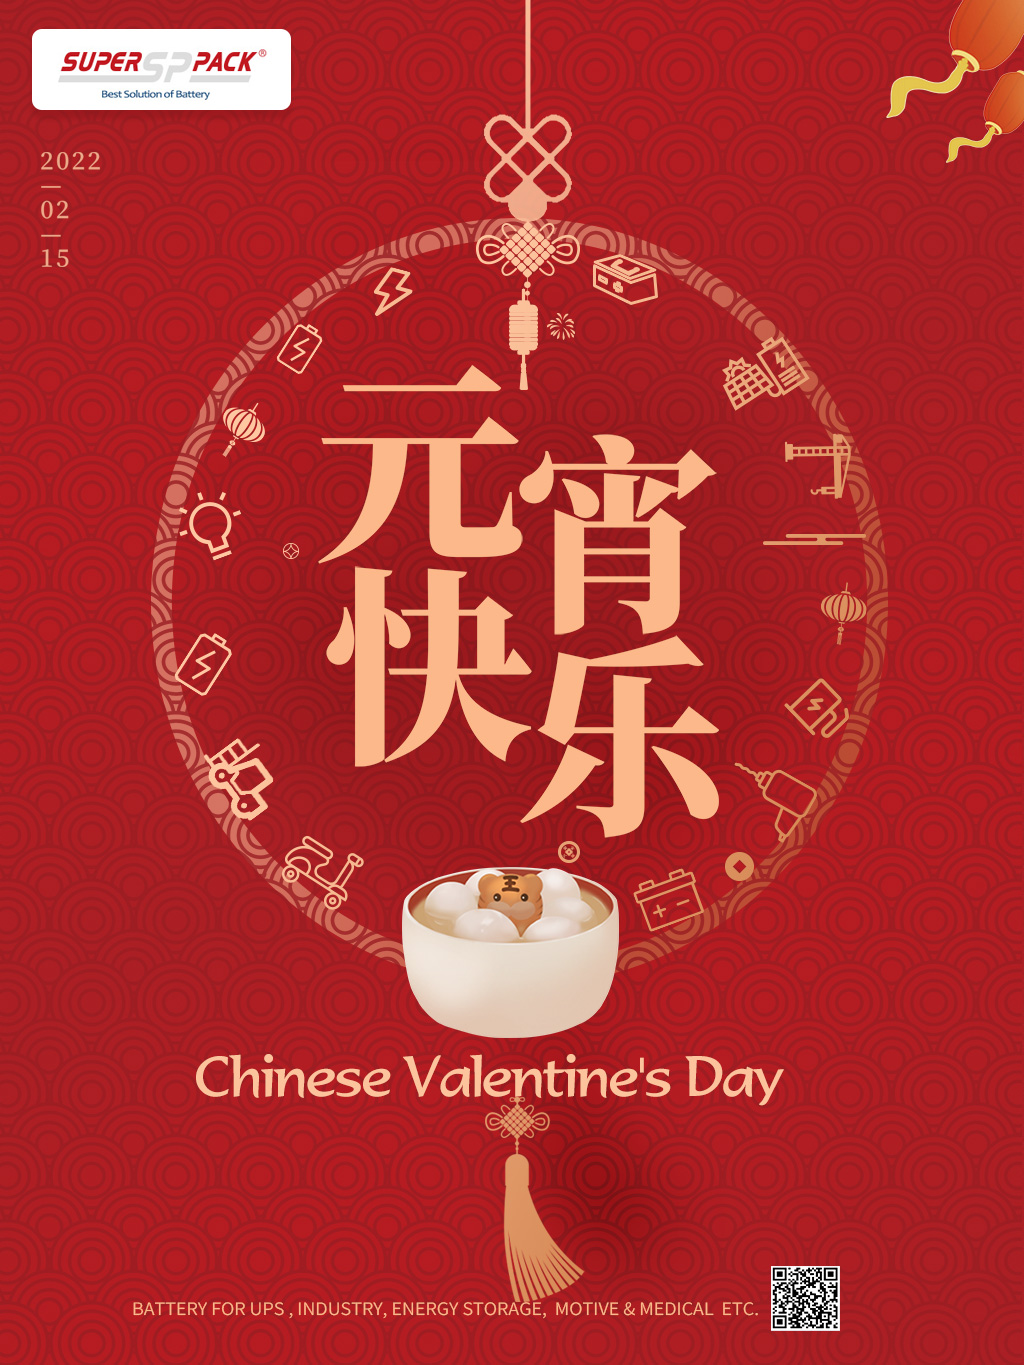 yuanxiao festival (kinesisk alla hjärtans dag 's)
